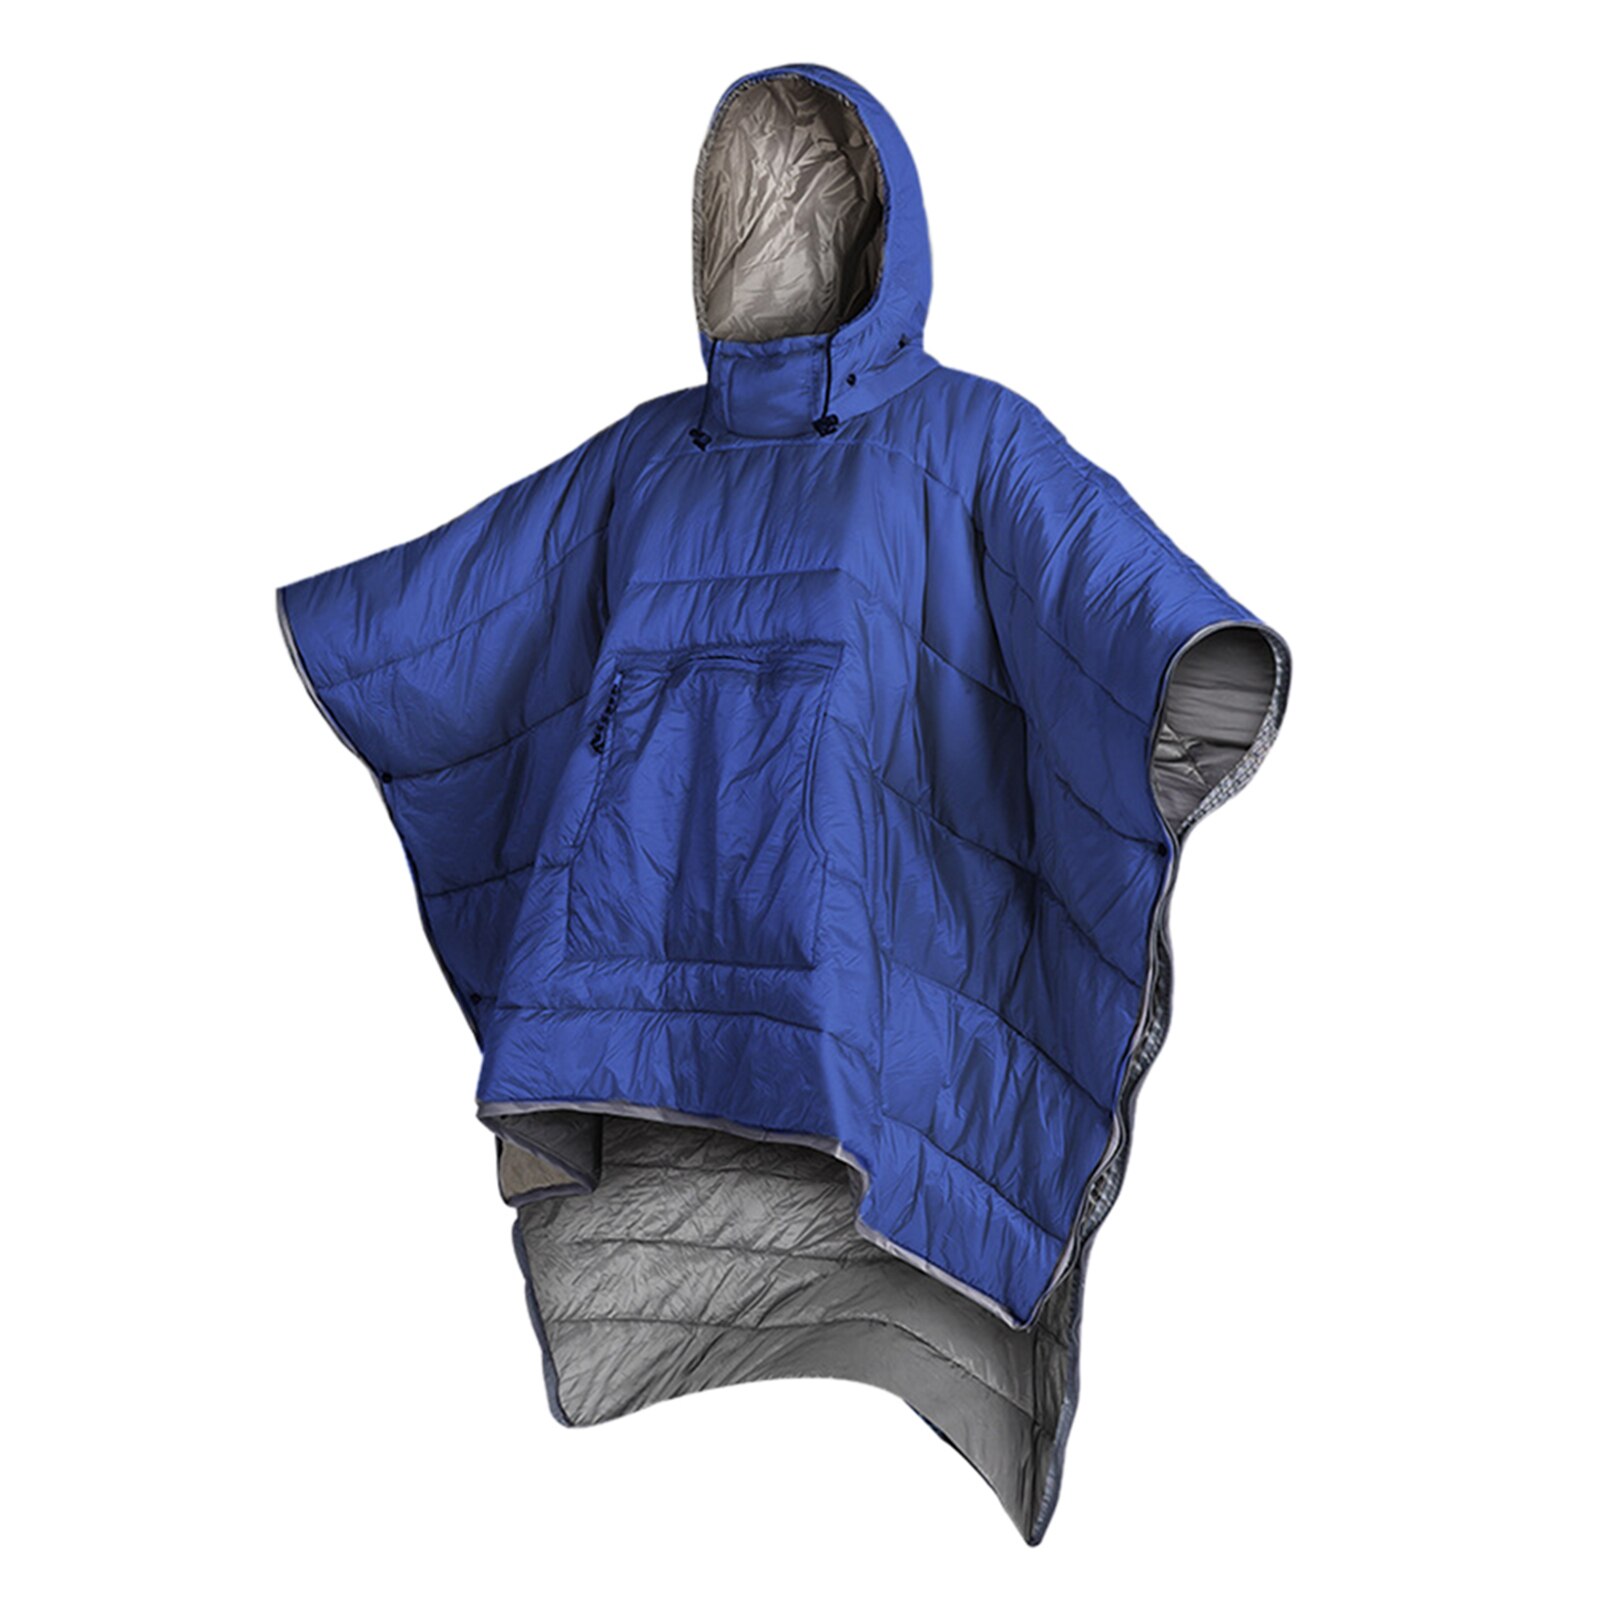 Vandtæt sovepose kappe poncho camping varm sove quilt udendørs camping sove tæppe quilt frakke med hætte: Mørkeblå